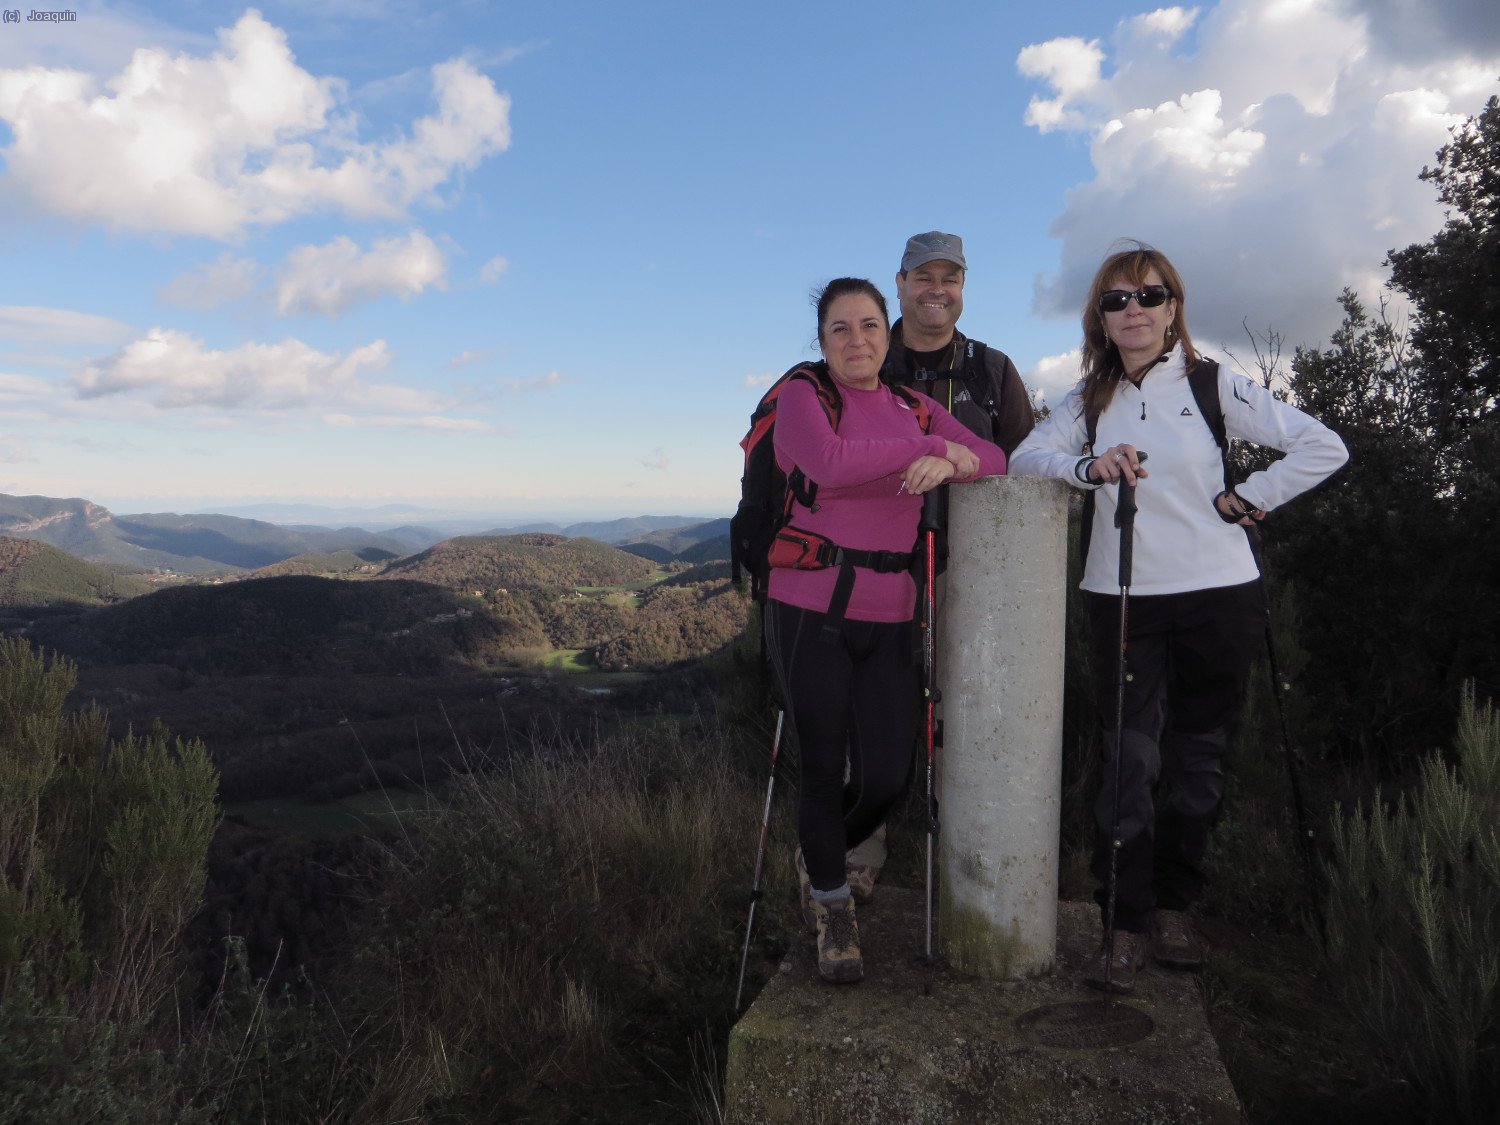 Pili, Xavi y Anna en la cima del Serrat de Roca Lladre